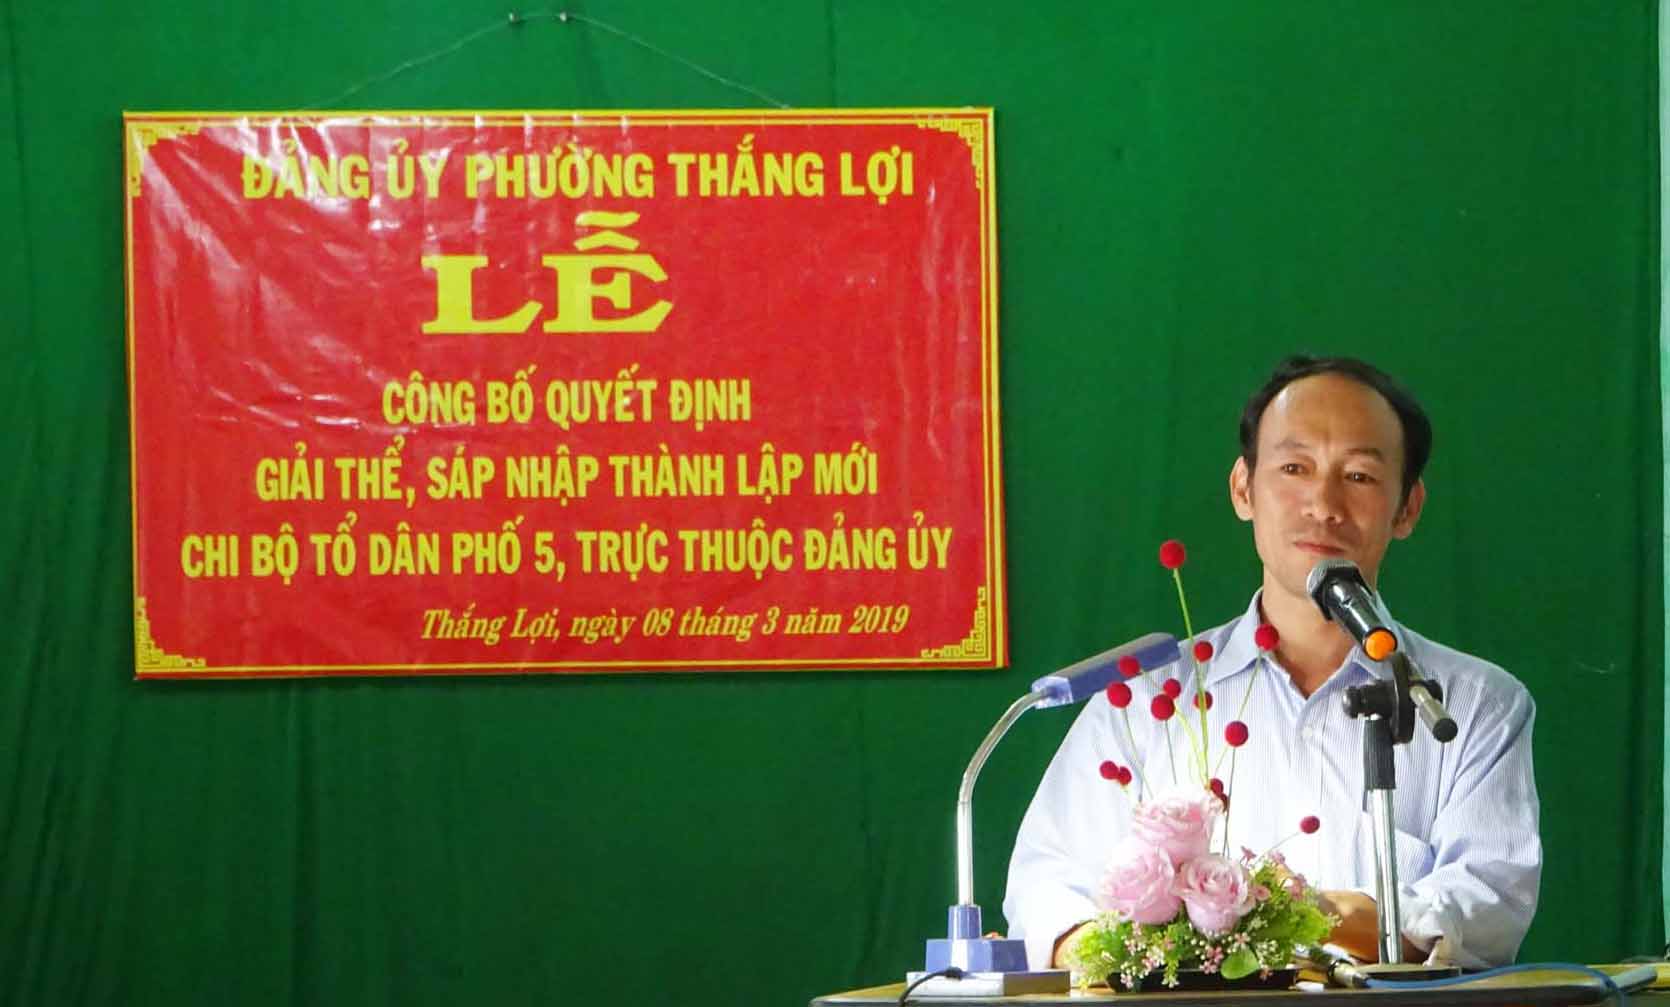 Đồng chí Nguyễn Bá Duy-Phó Bí thư Đảng ủy phường Thắng Lợi phát biểu tại buổi lễ. Ảnh: Hà Phương